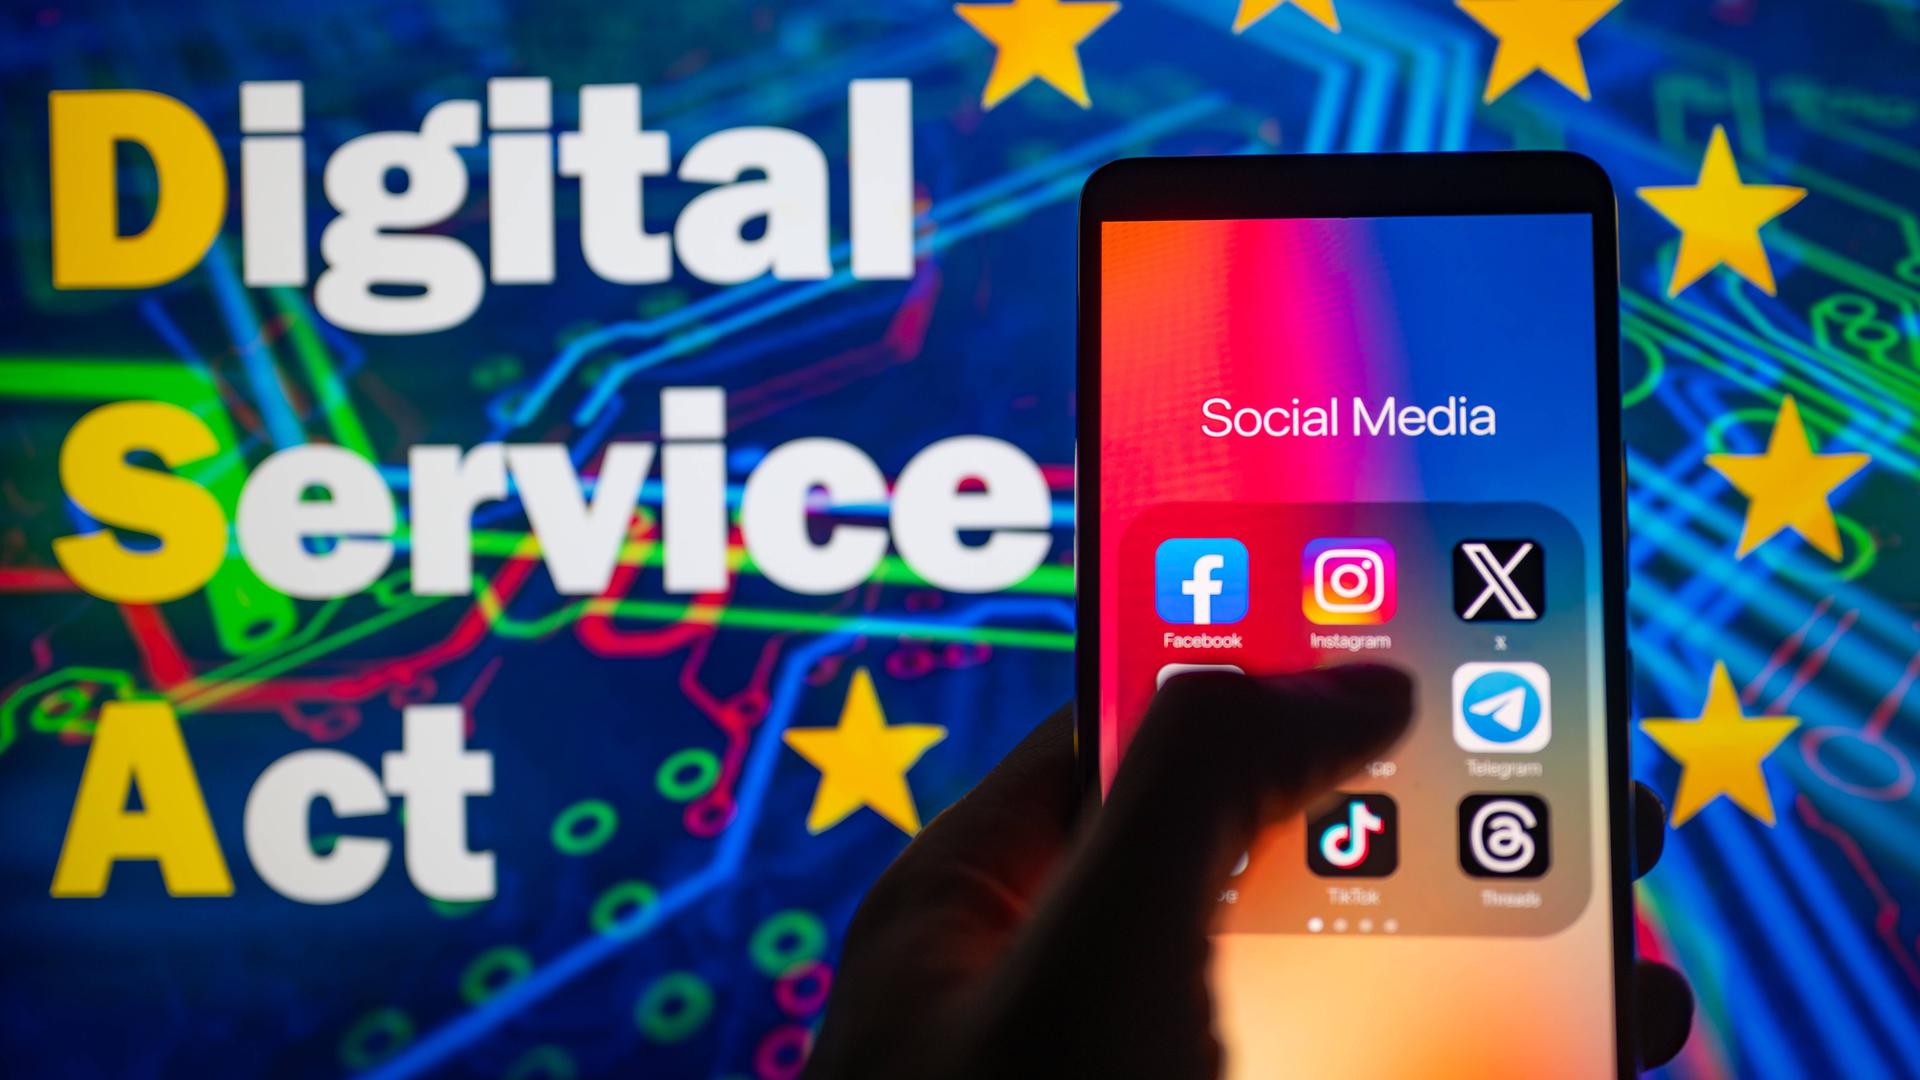 Ein Smartphone mit Social-Media-Anwendungen, im Hintergrund eine Grafik zum Digital Service Act der EU